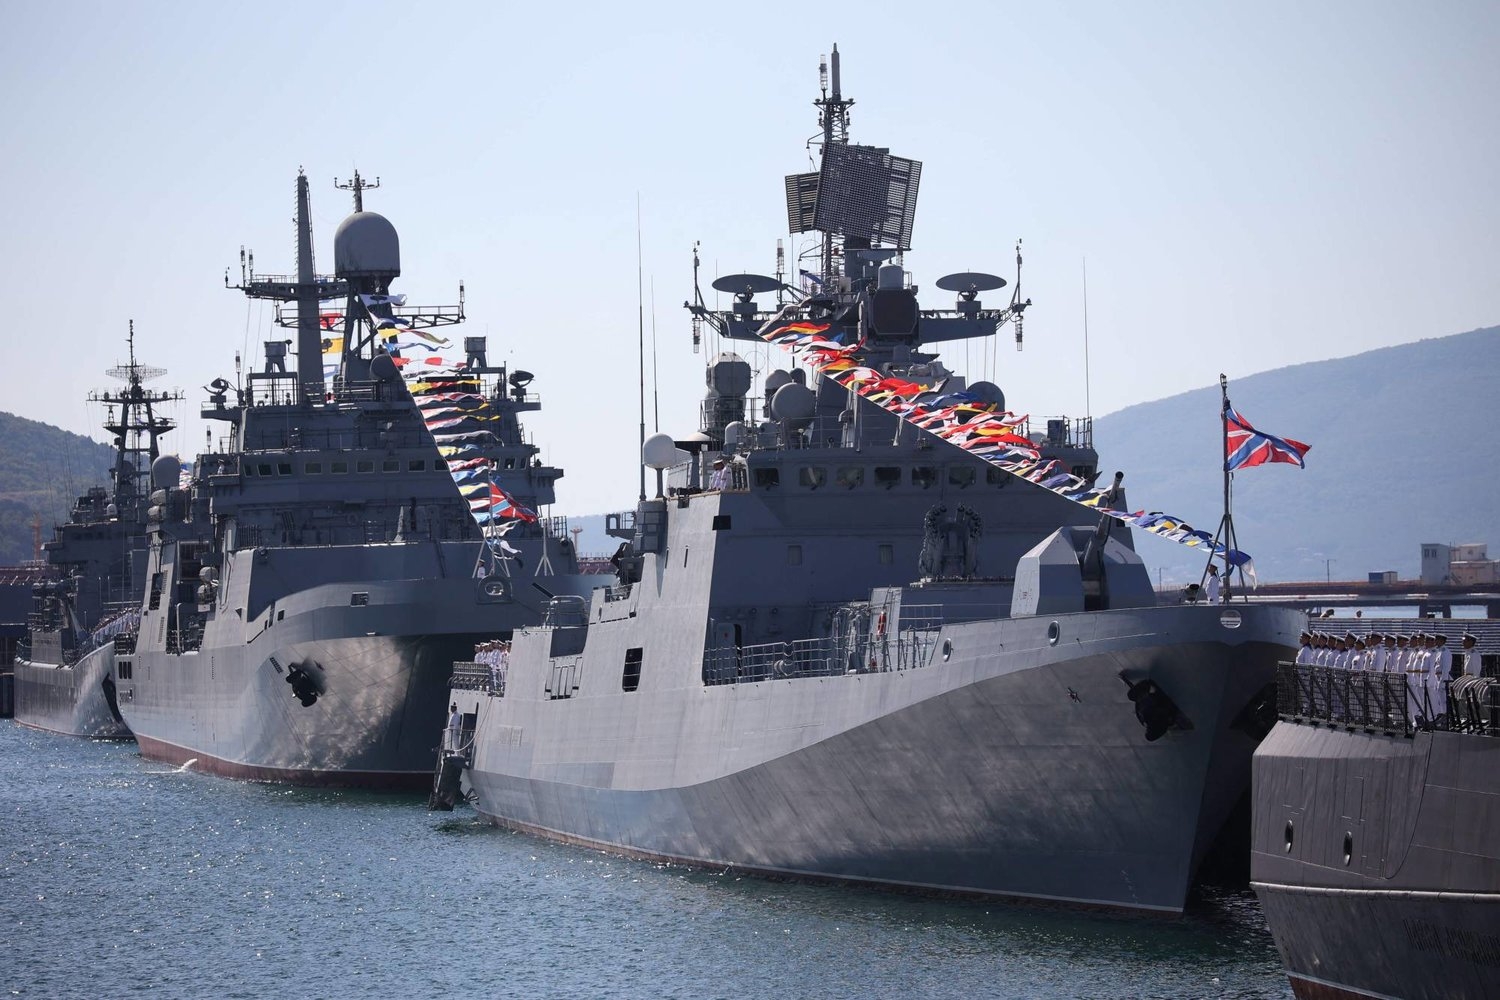 موسكو: أوكرانيا تهاجم قاعدة بحرية روسية قرب نوفوروسيسك